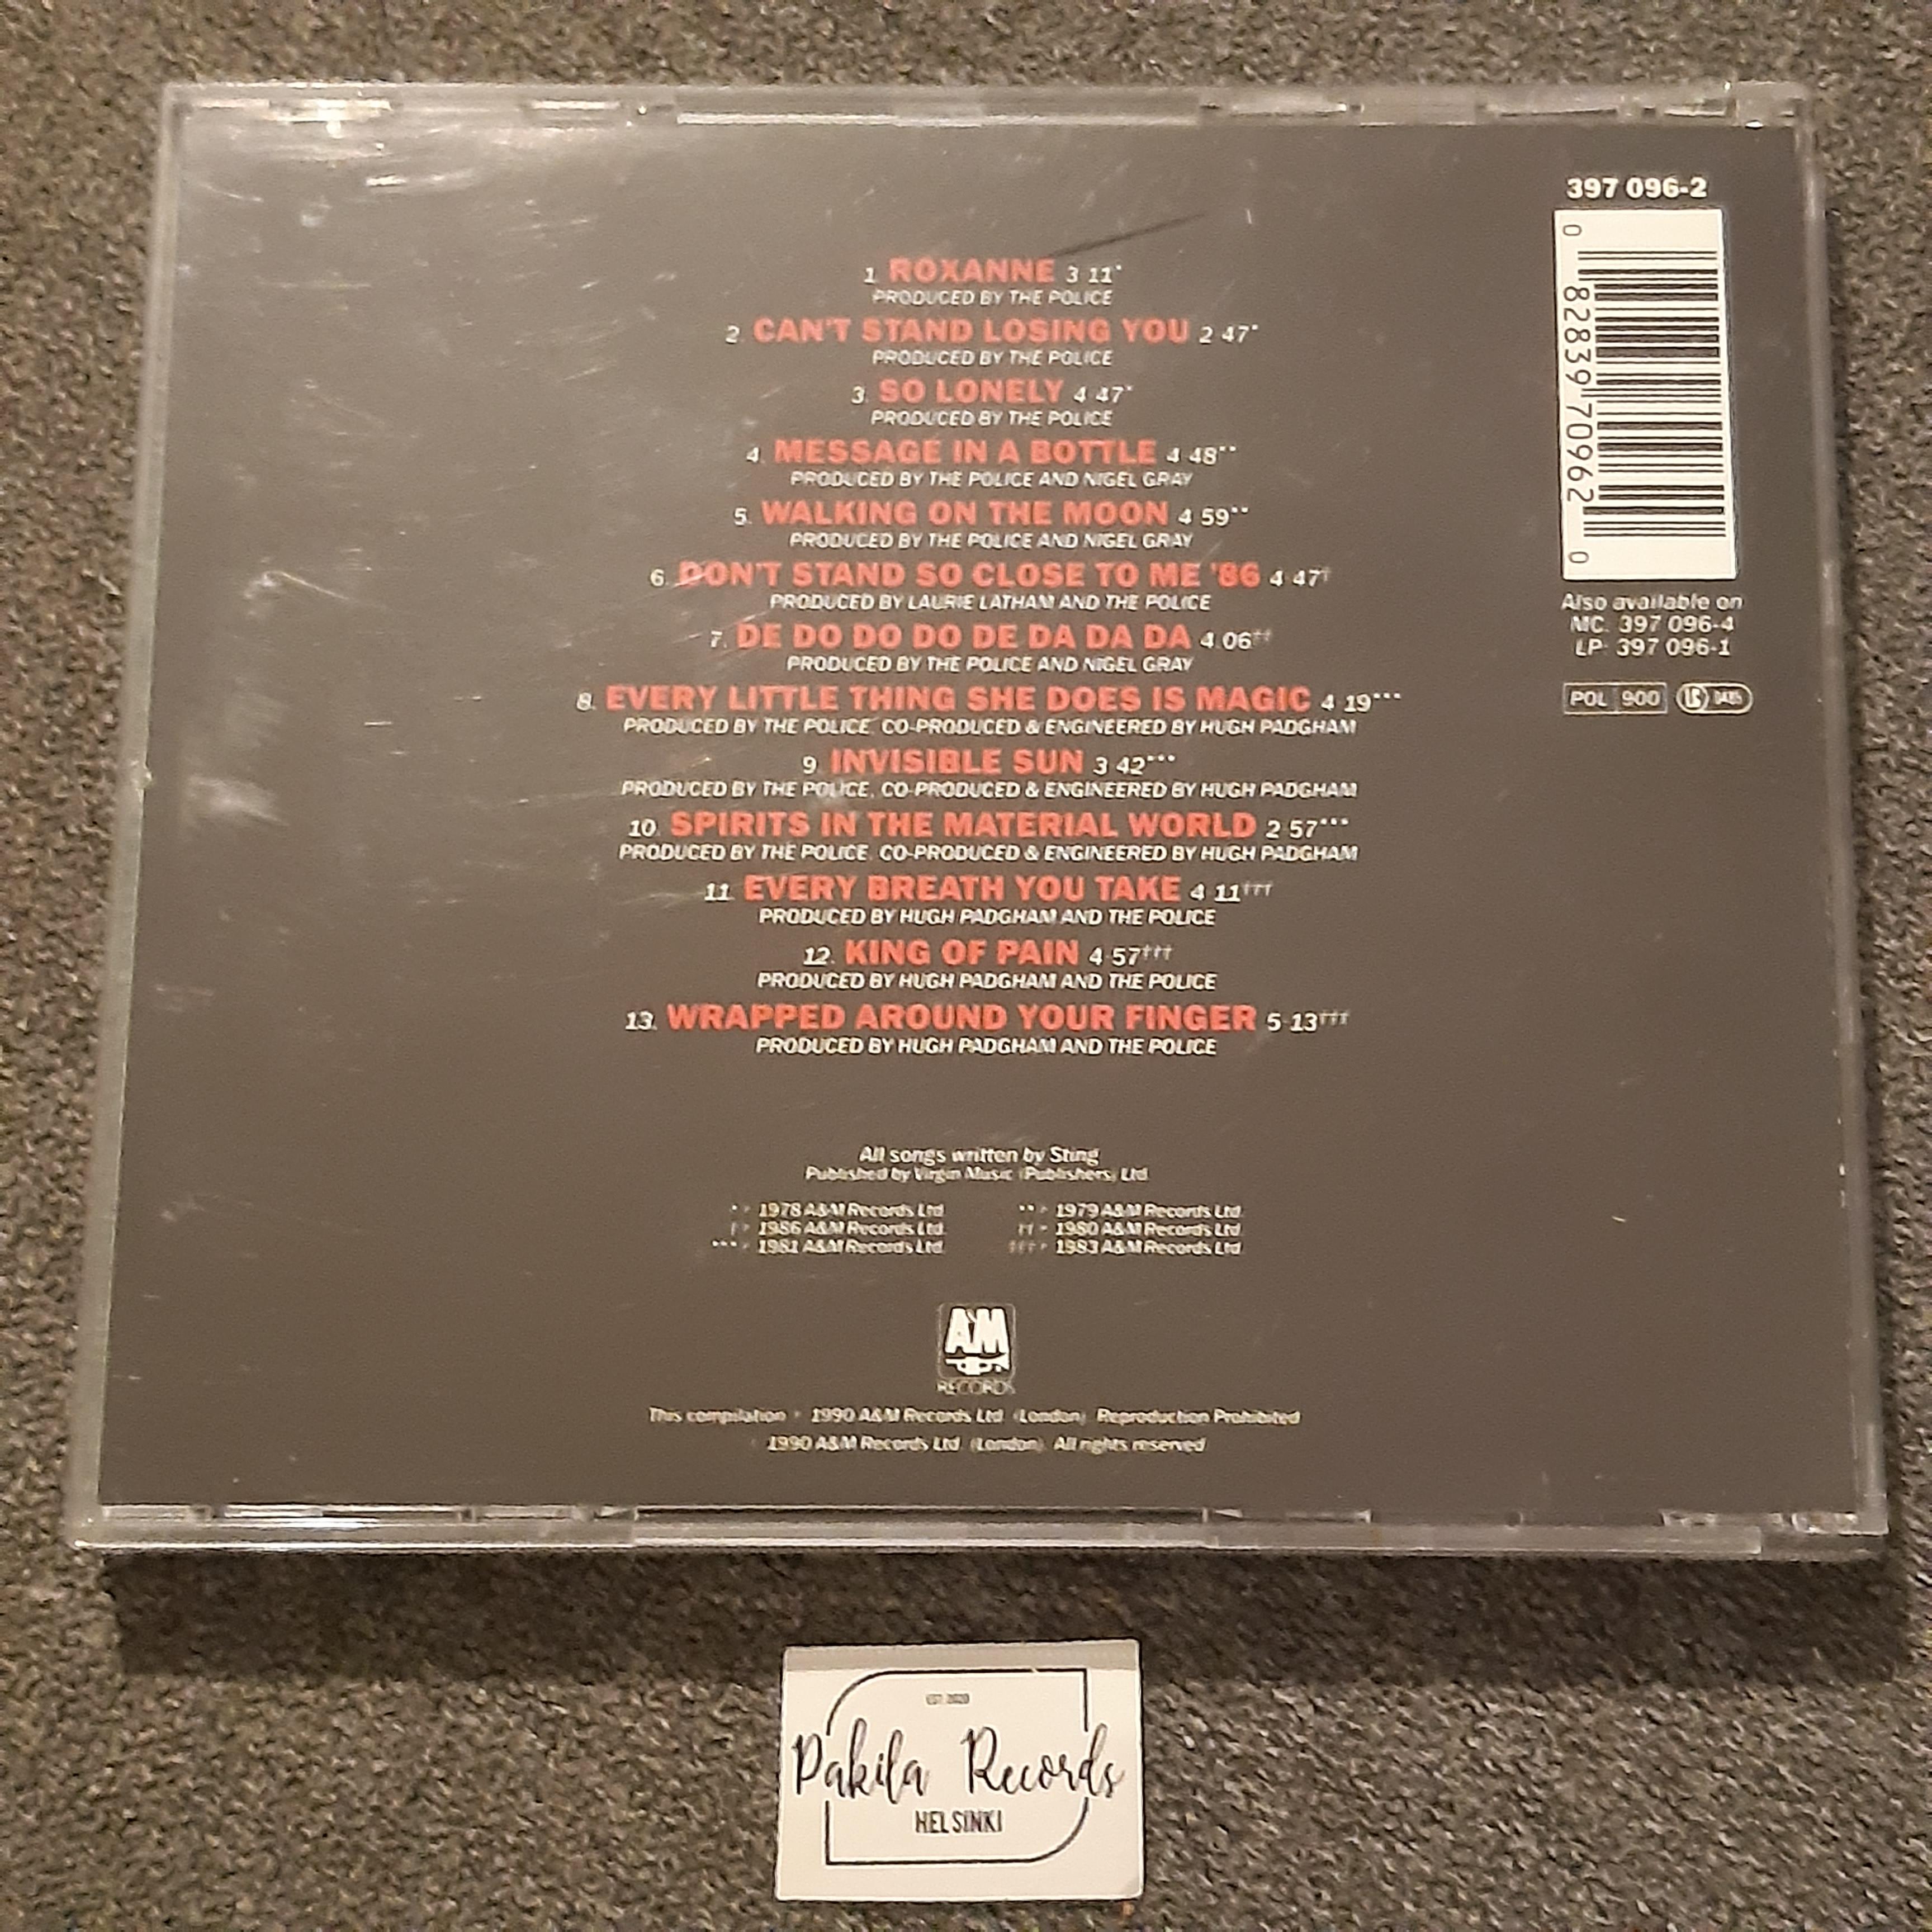 The Police - Their Greatest Hits - CD (käytetty)